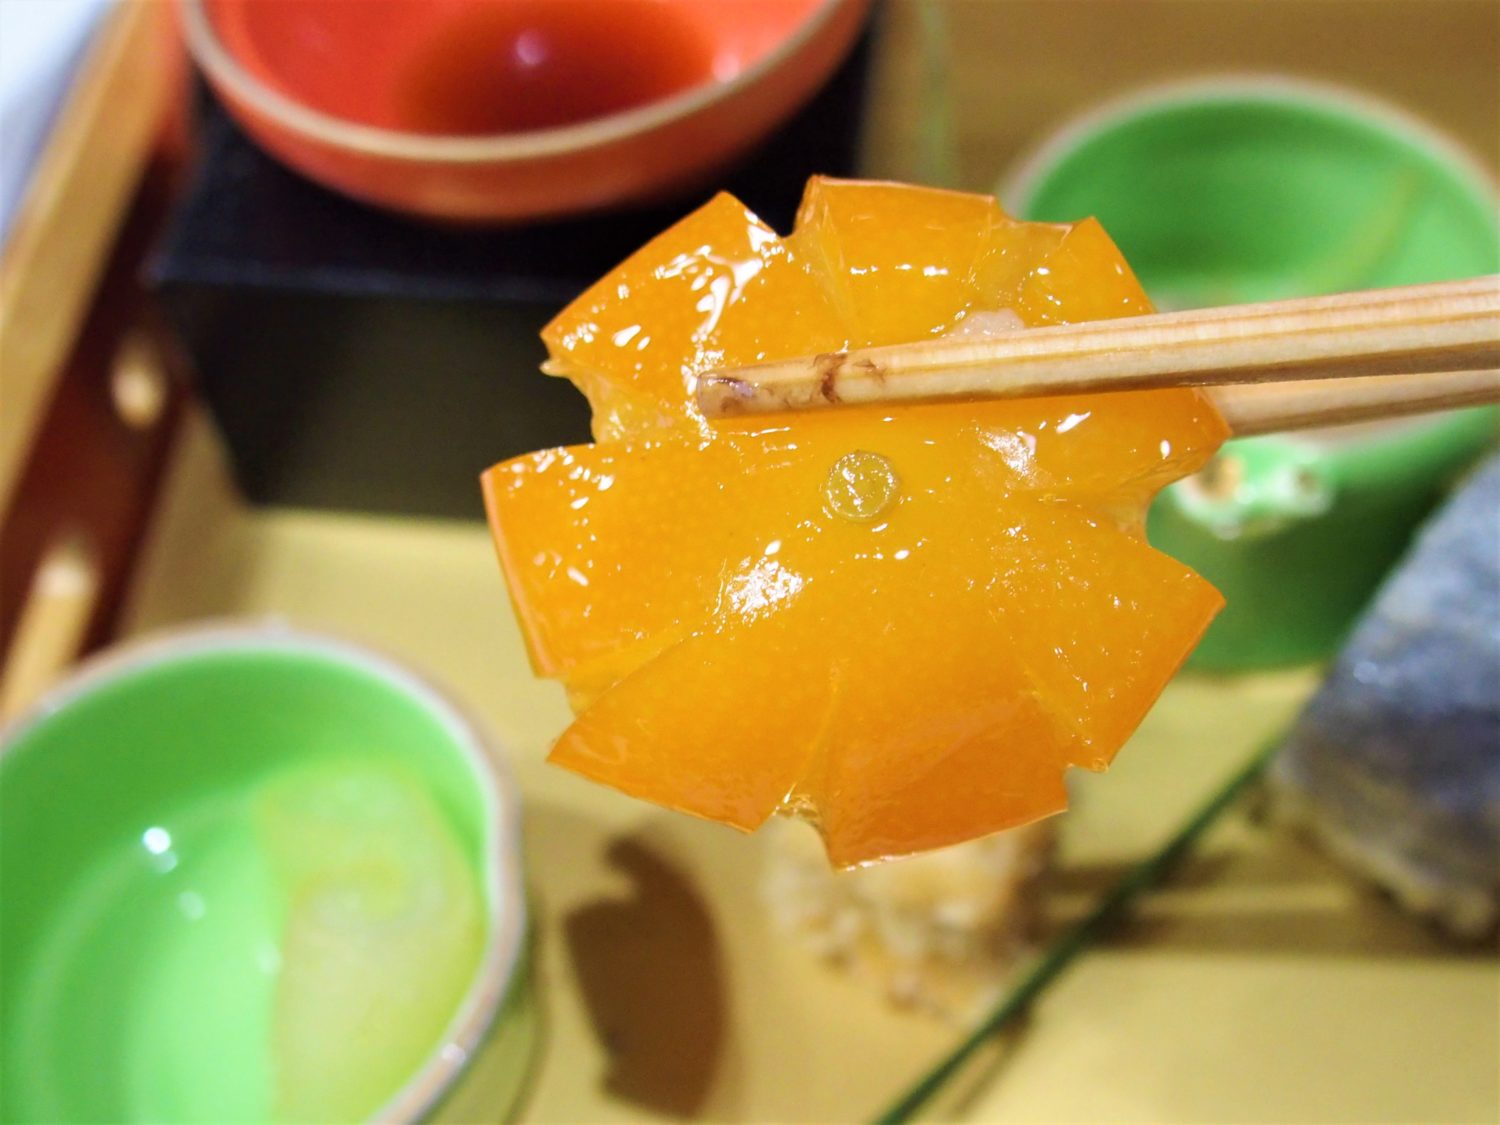 "Kinkan" Japanese orange